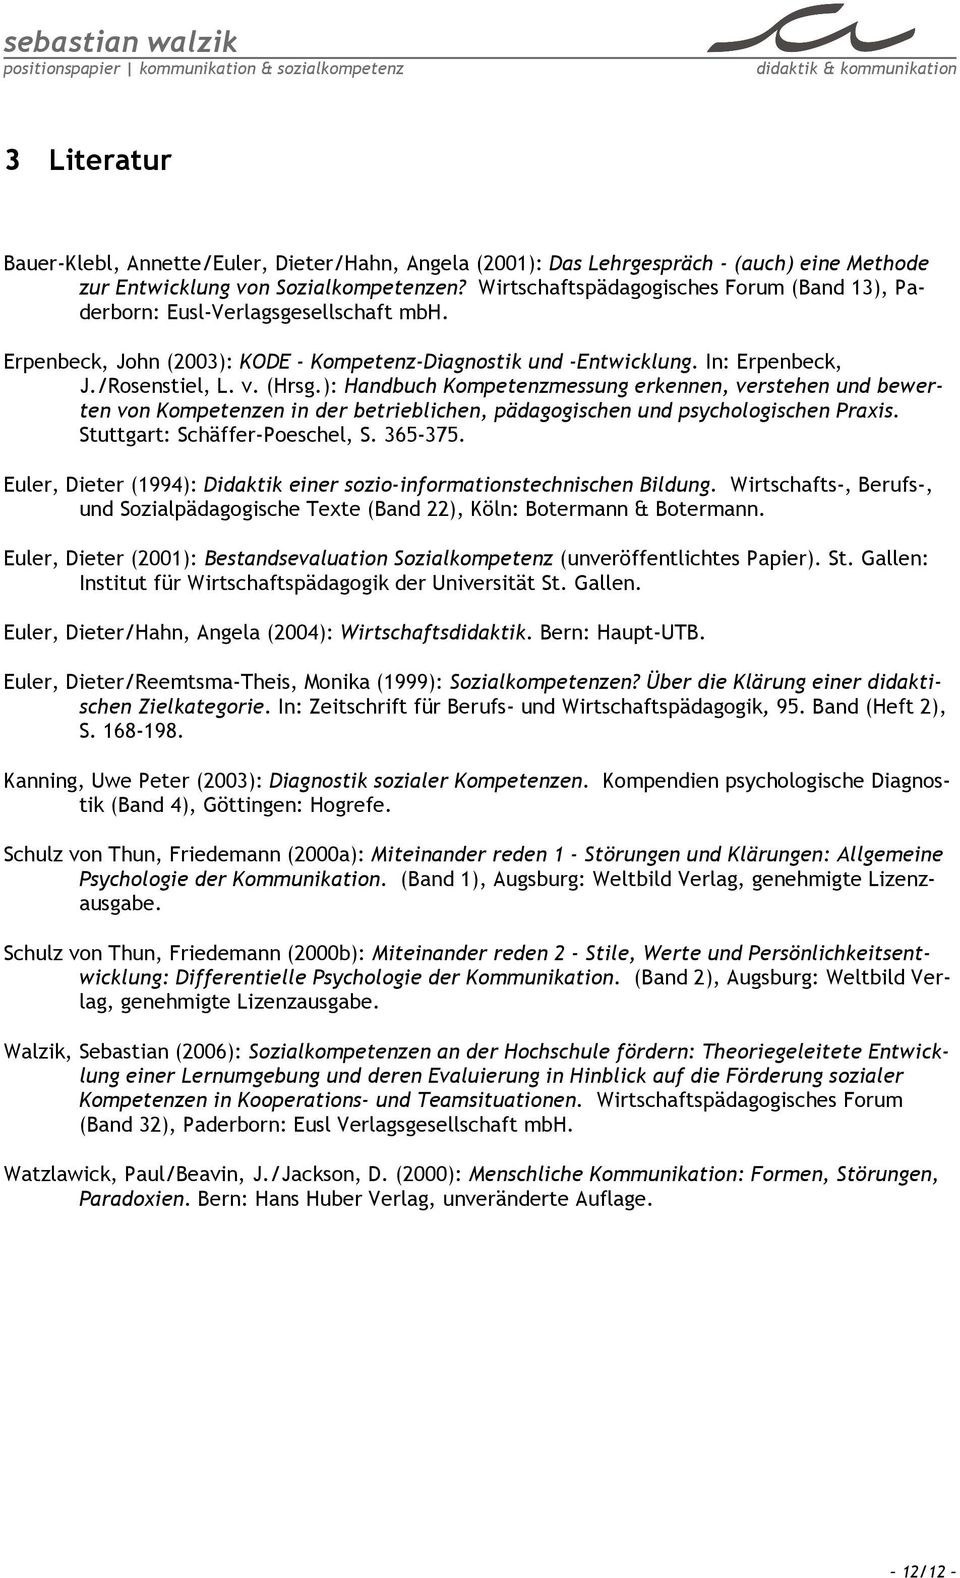 ): Handbuch Kompetenzmessung erkennen, verstehen und bewerten von Kompetenzen in der betrieblichen, pädagogischen und psychologischen Praxis. Stuttgart: Schäffer-Poeschel, S. 365-375.